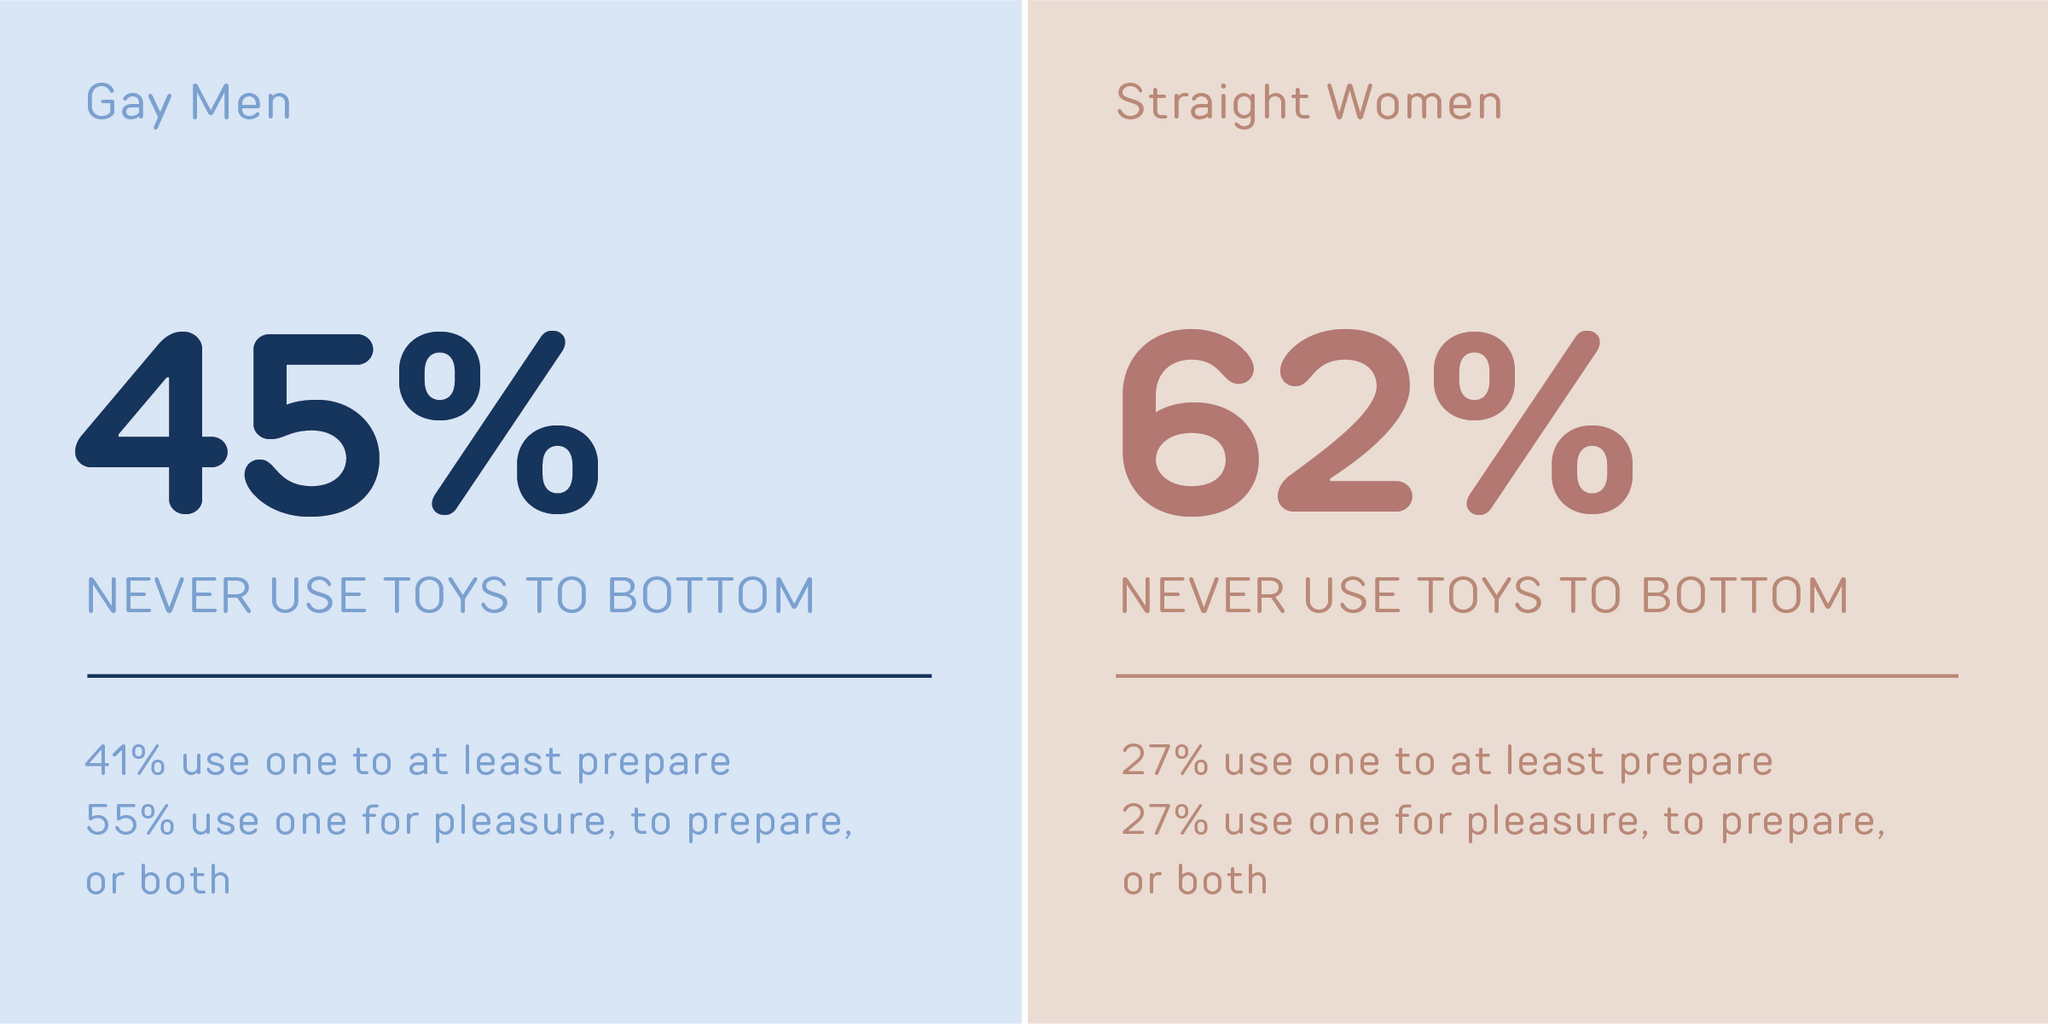 Toy Usage: Men vs. Women